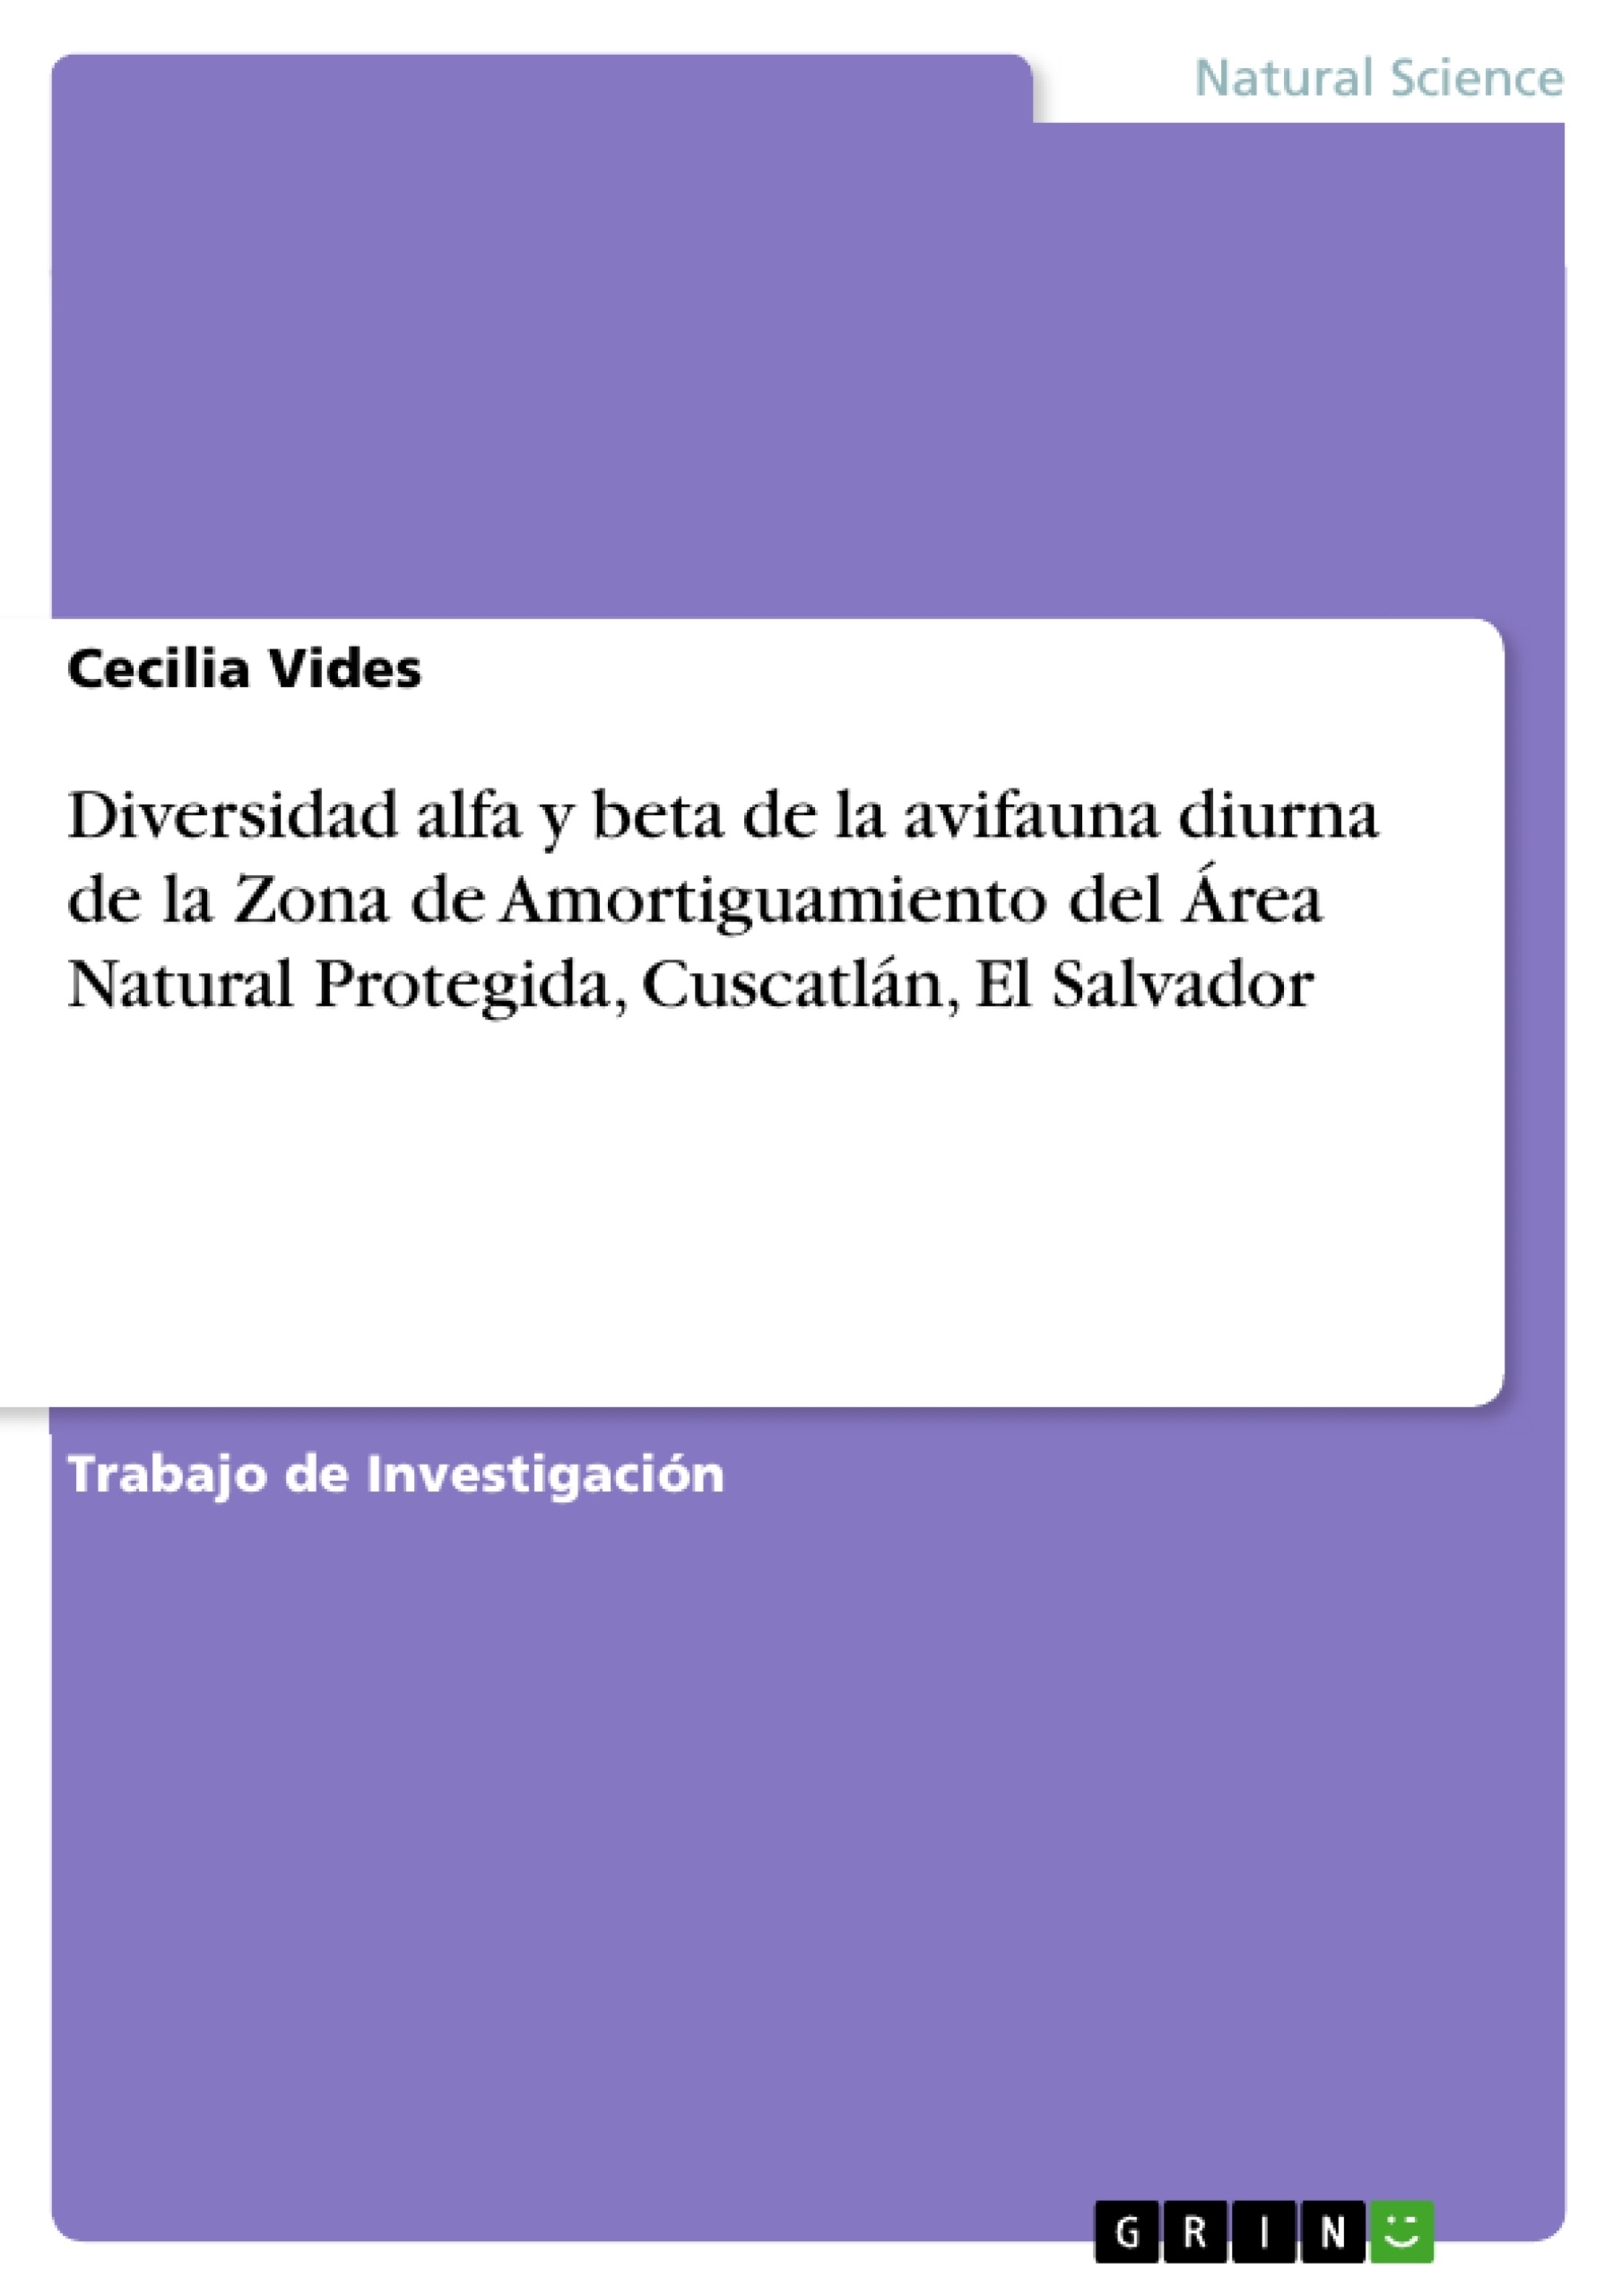 Título: Diversidad alfa y beta de la avifauna diurna de la Zona de Amortiguamiento del Área Natural Protegida, Cuscatlán, El Salvador